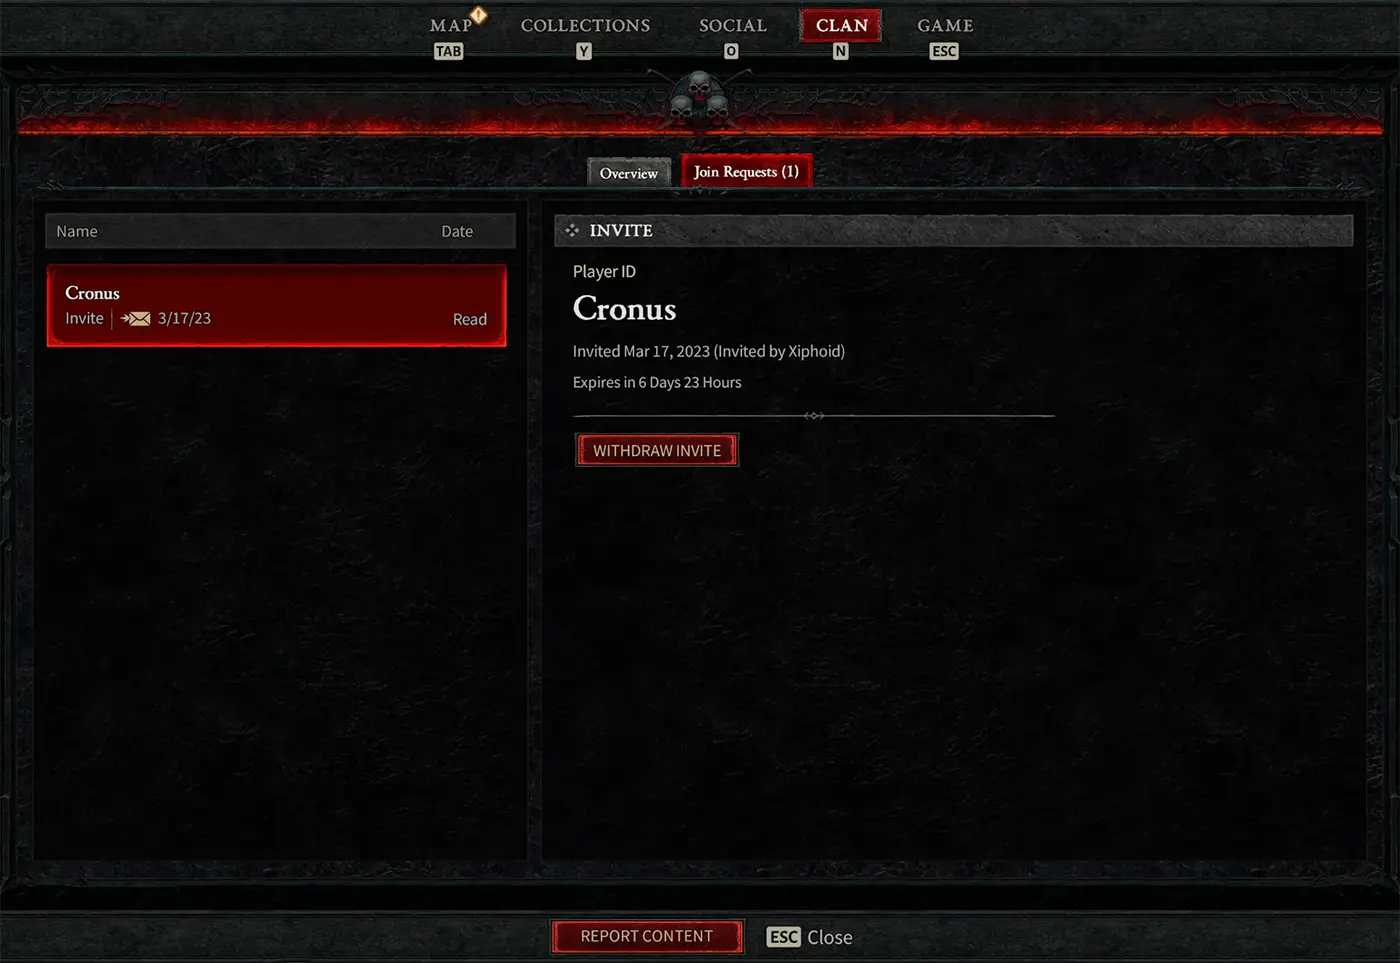 Diablo IV clan invite request screen